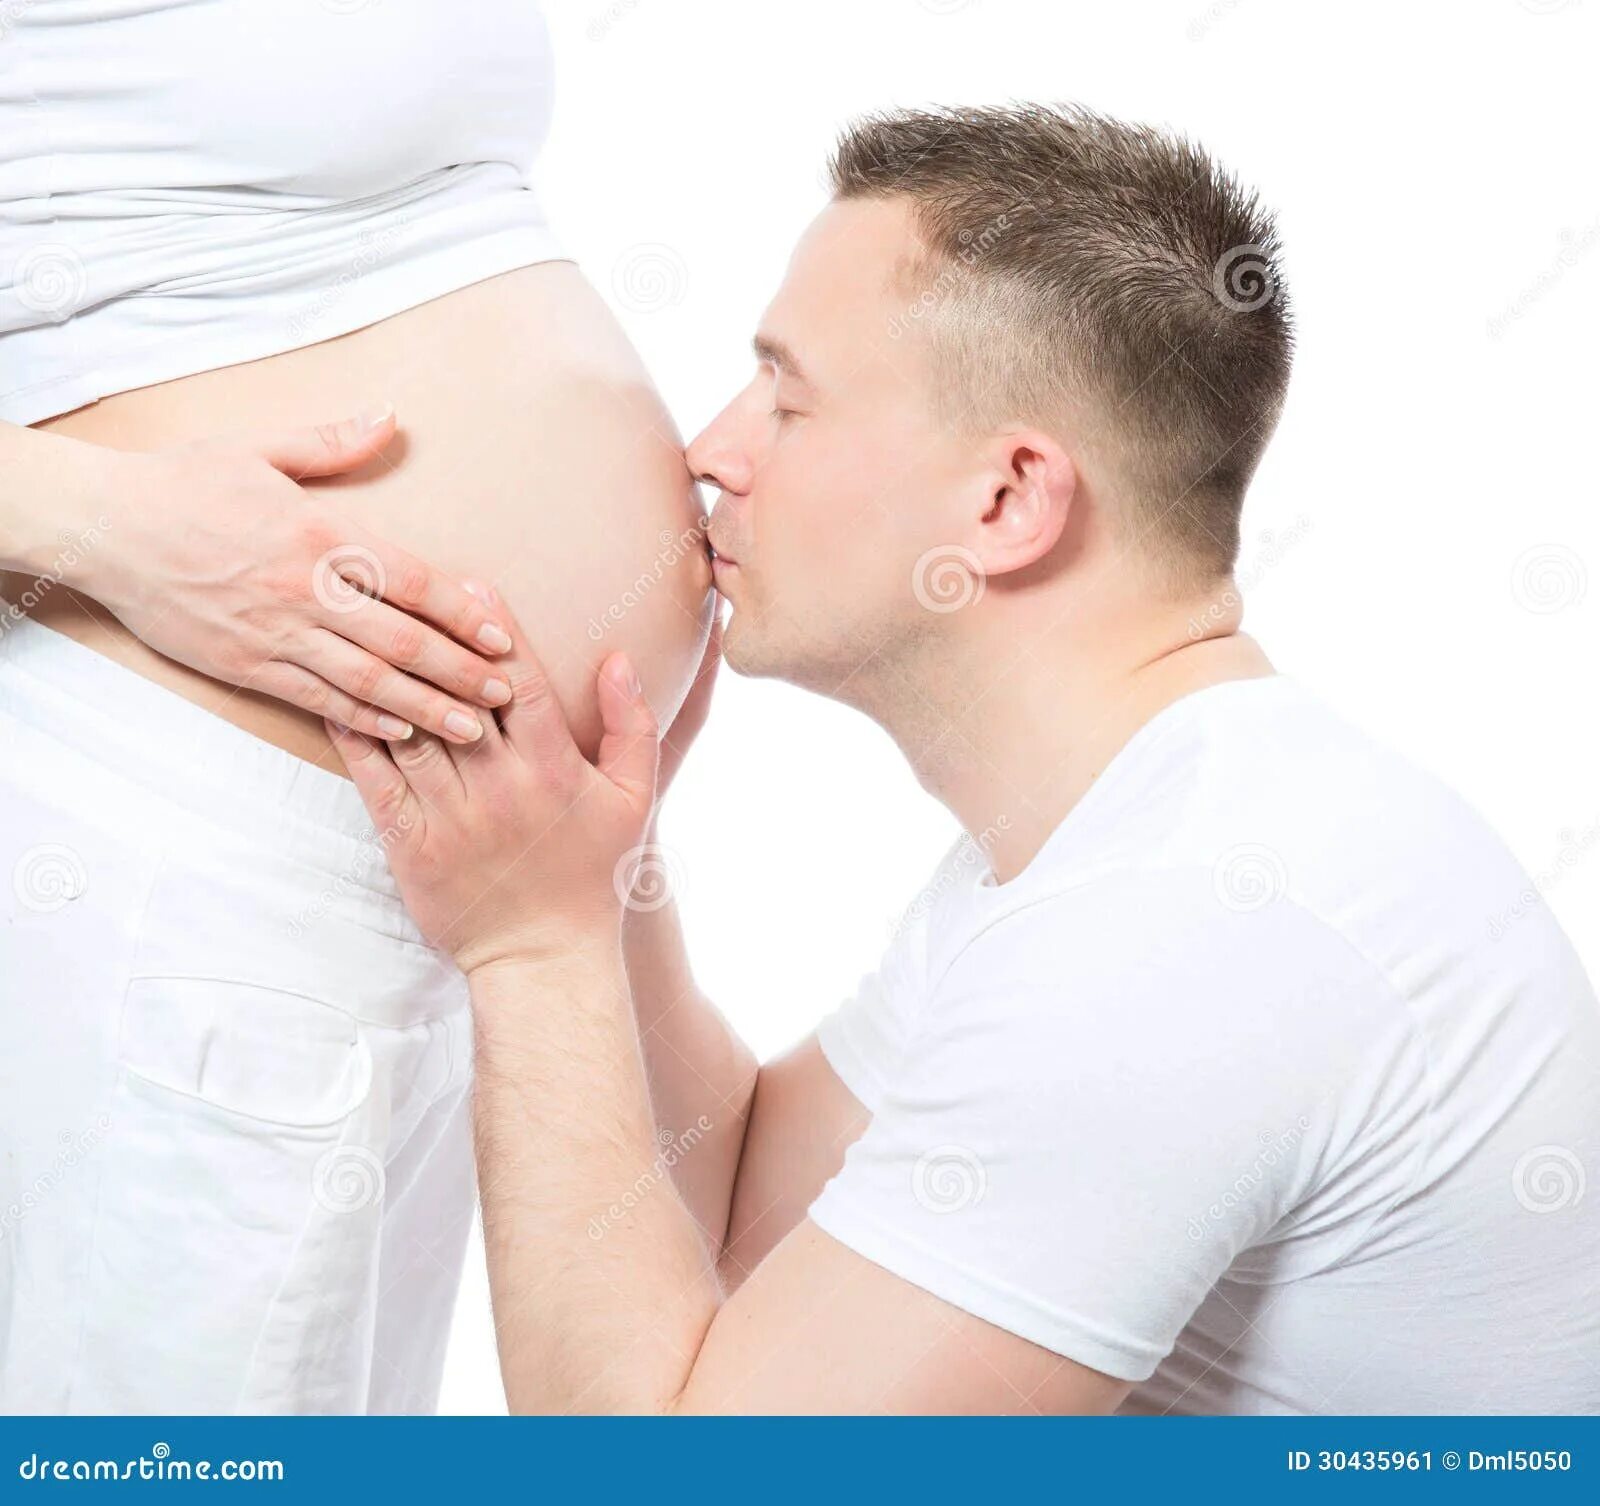 Забеременеть от родного сына. Беременных женщин с мужчинами. Мужчина целует беременный животик. Беременные мужчины.